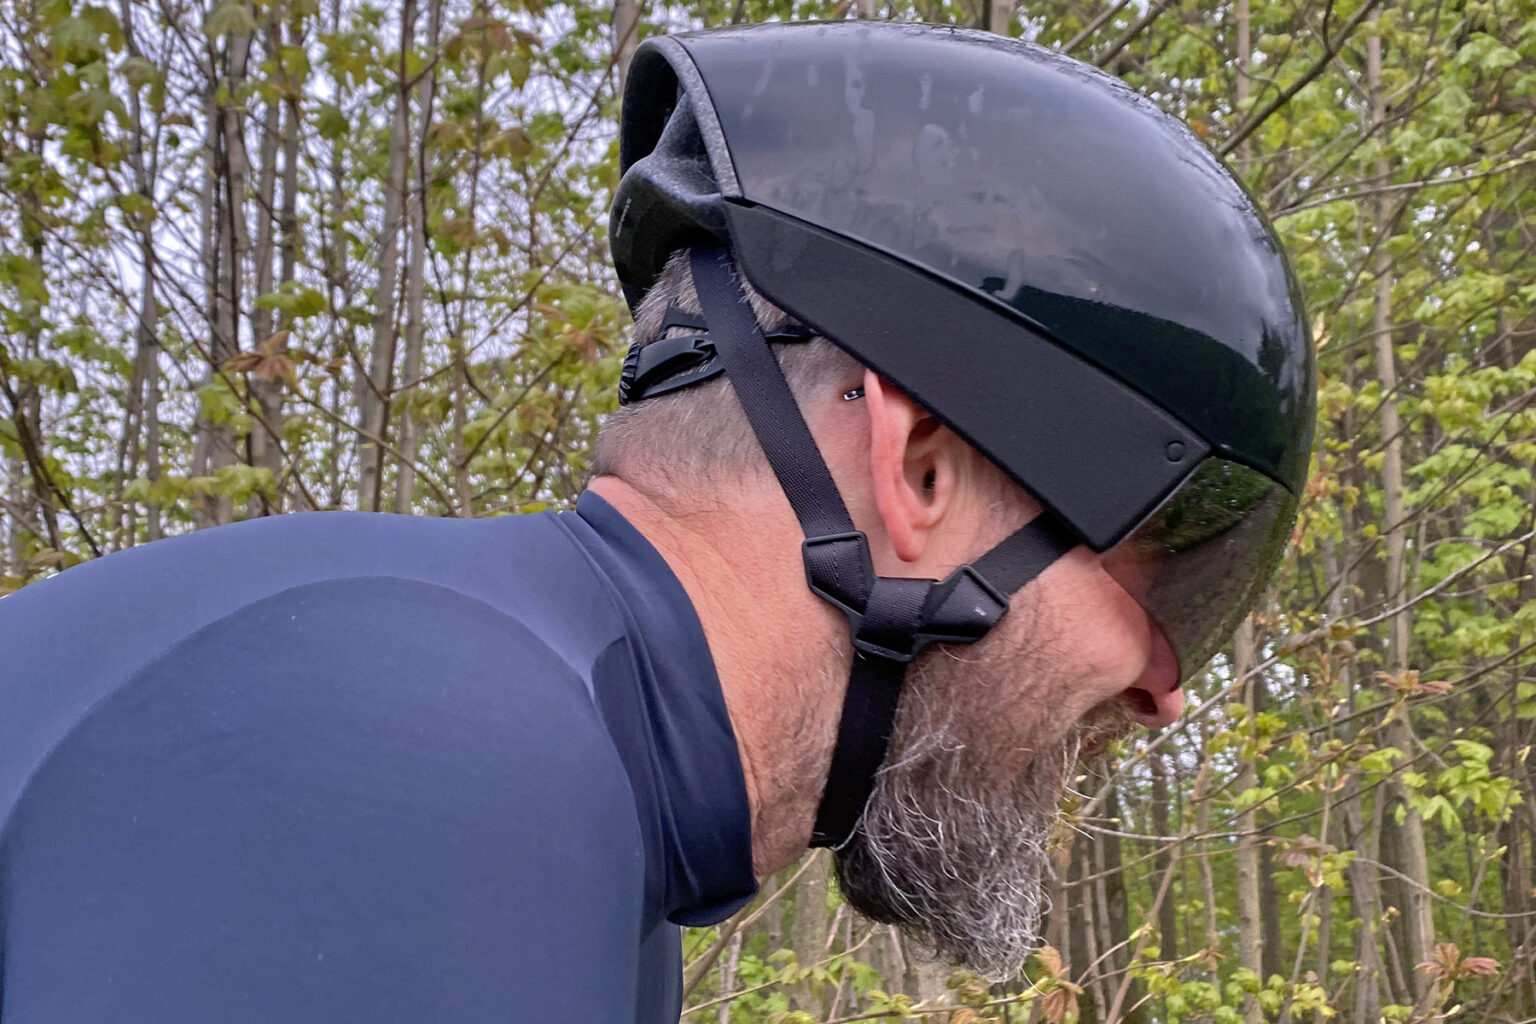 POC Procen Air aero road race helmet Review, ear contact